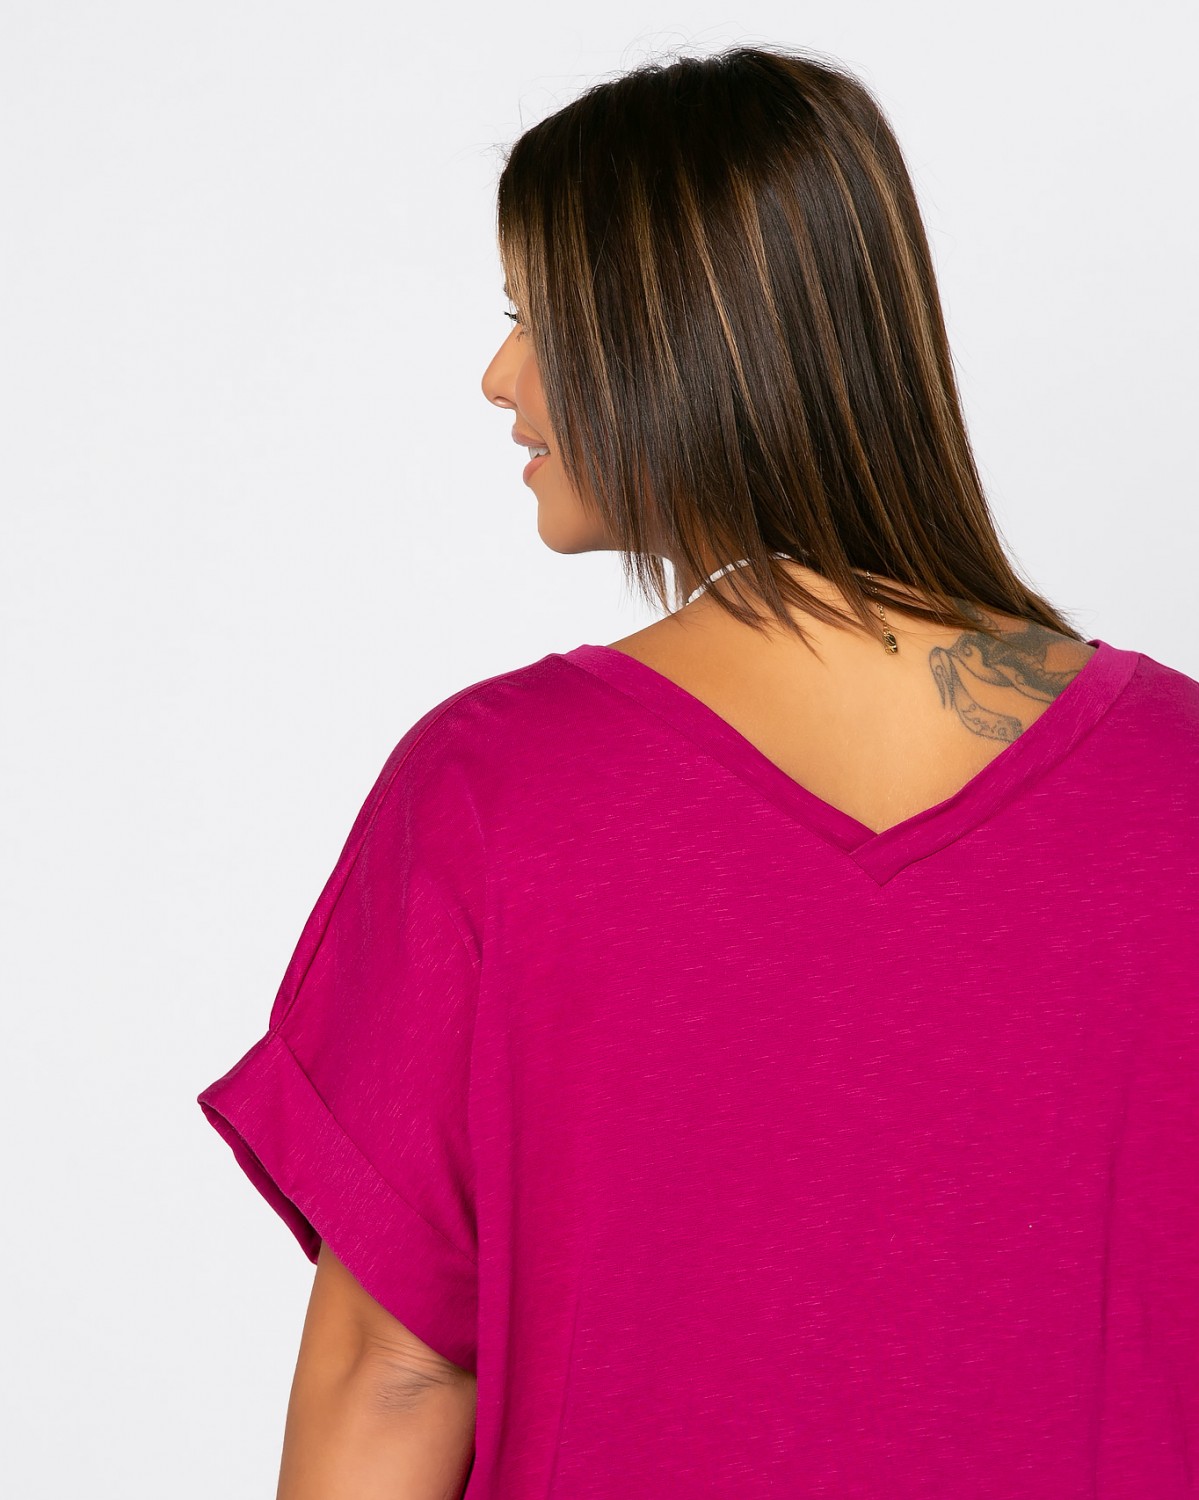 Cecilia Τ-Shirt, kolor magenta light